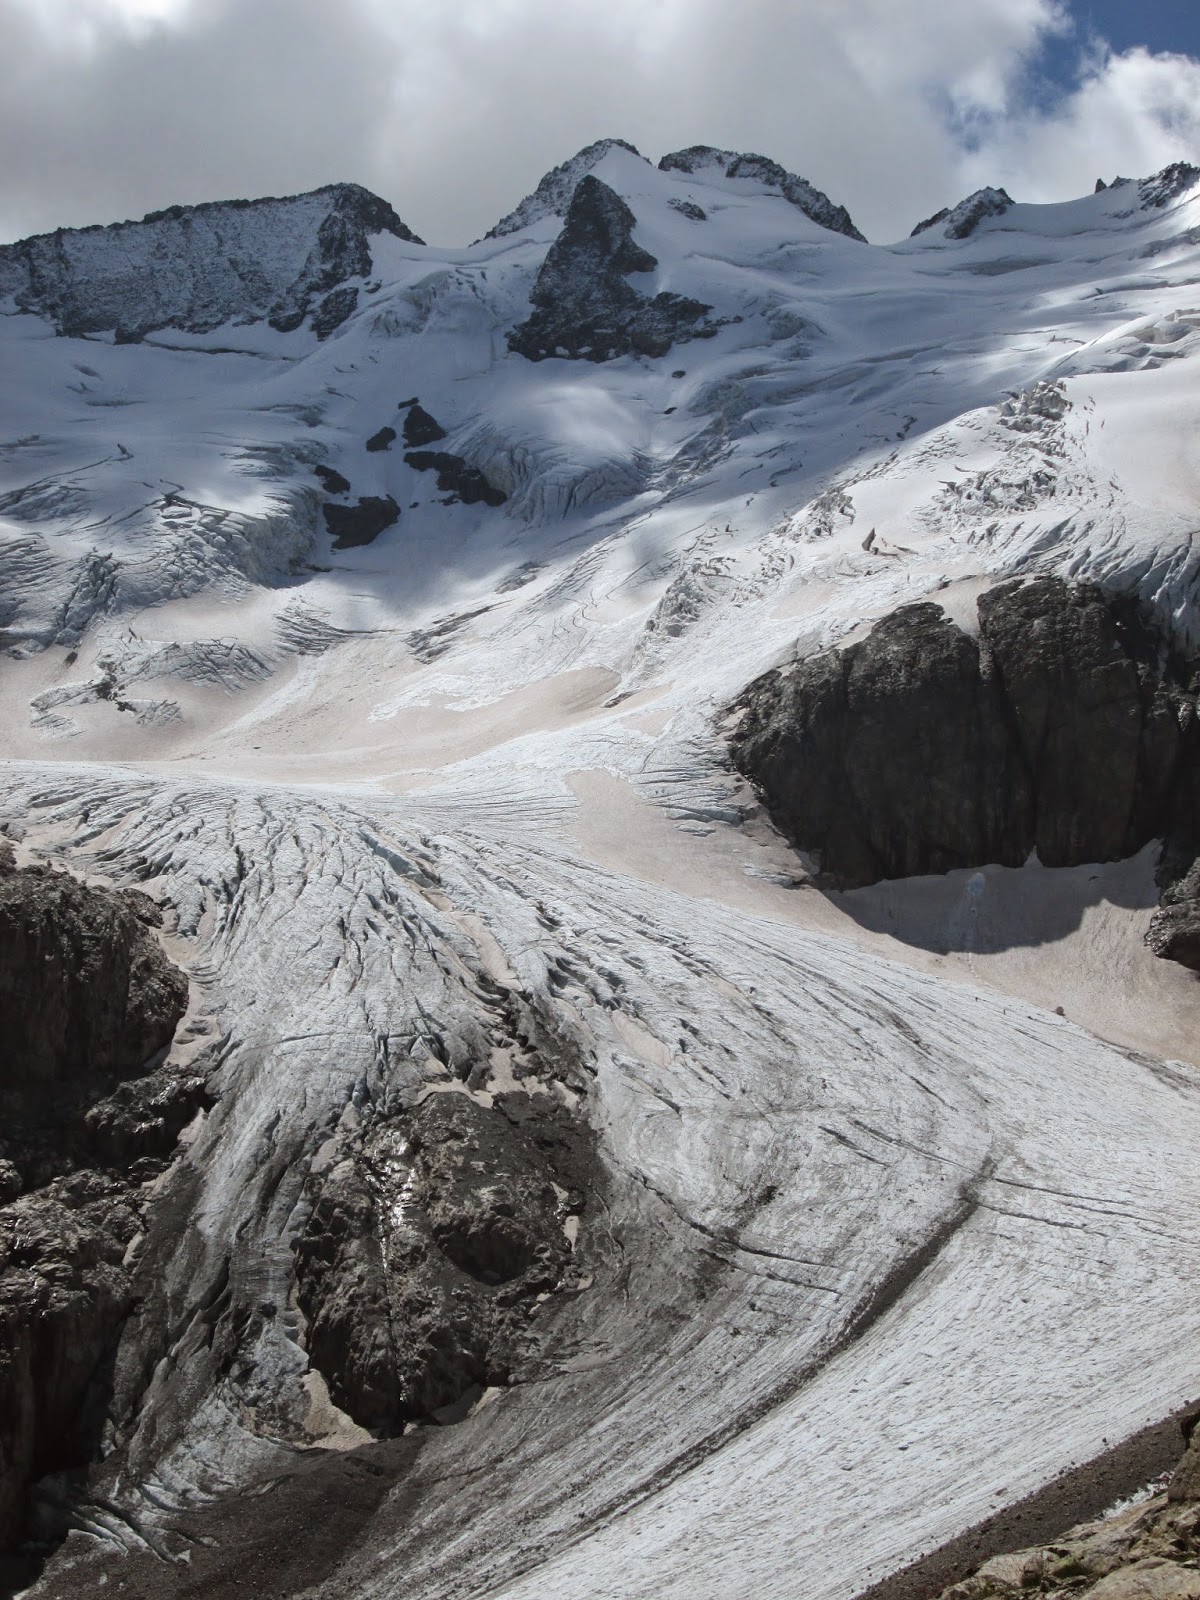 Glacier de la Pilatte, Ecrins National Park, Alps France